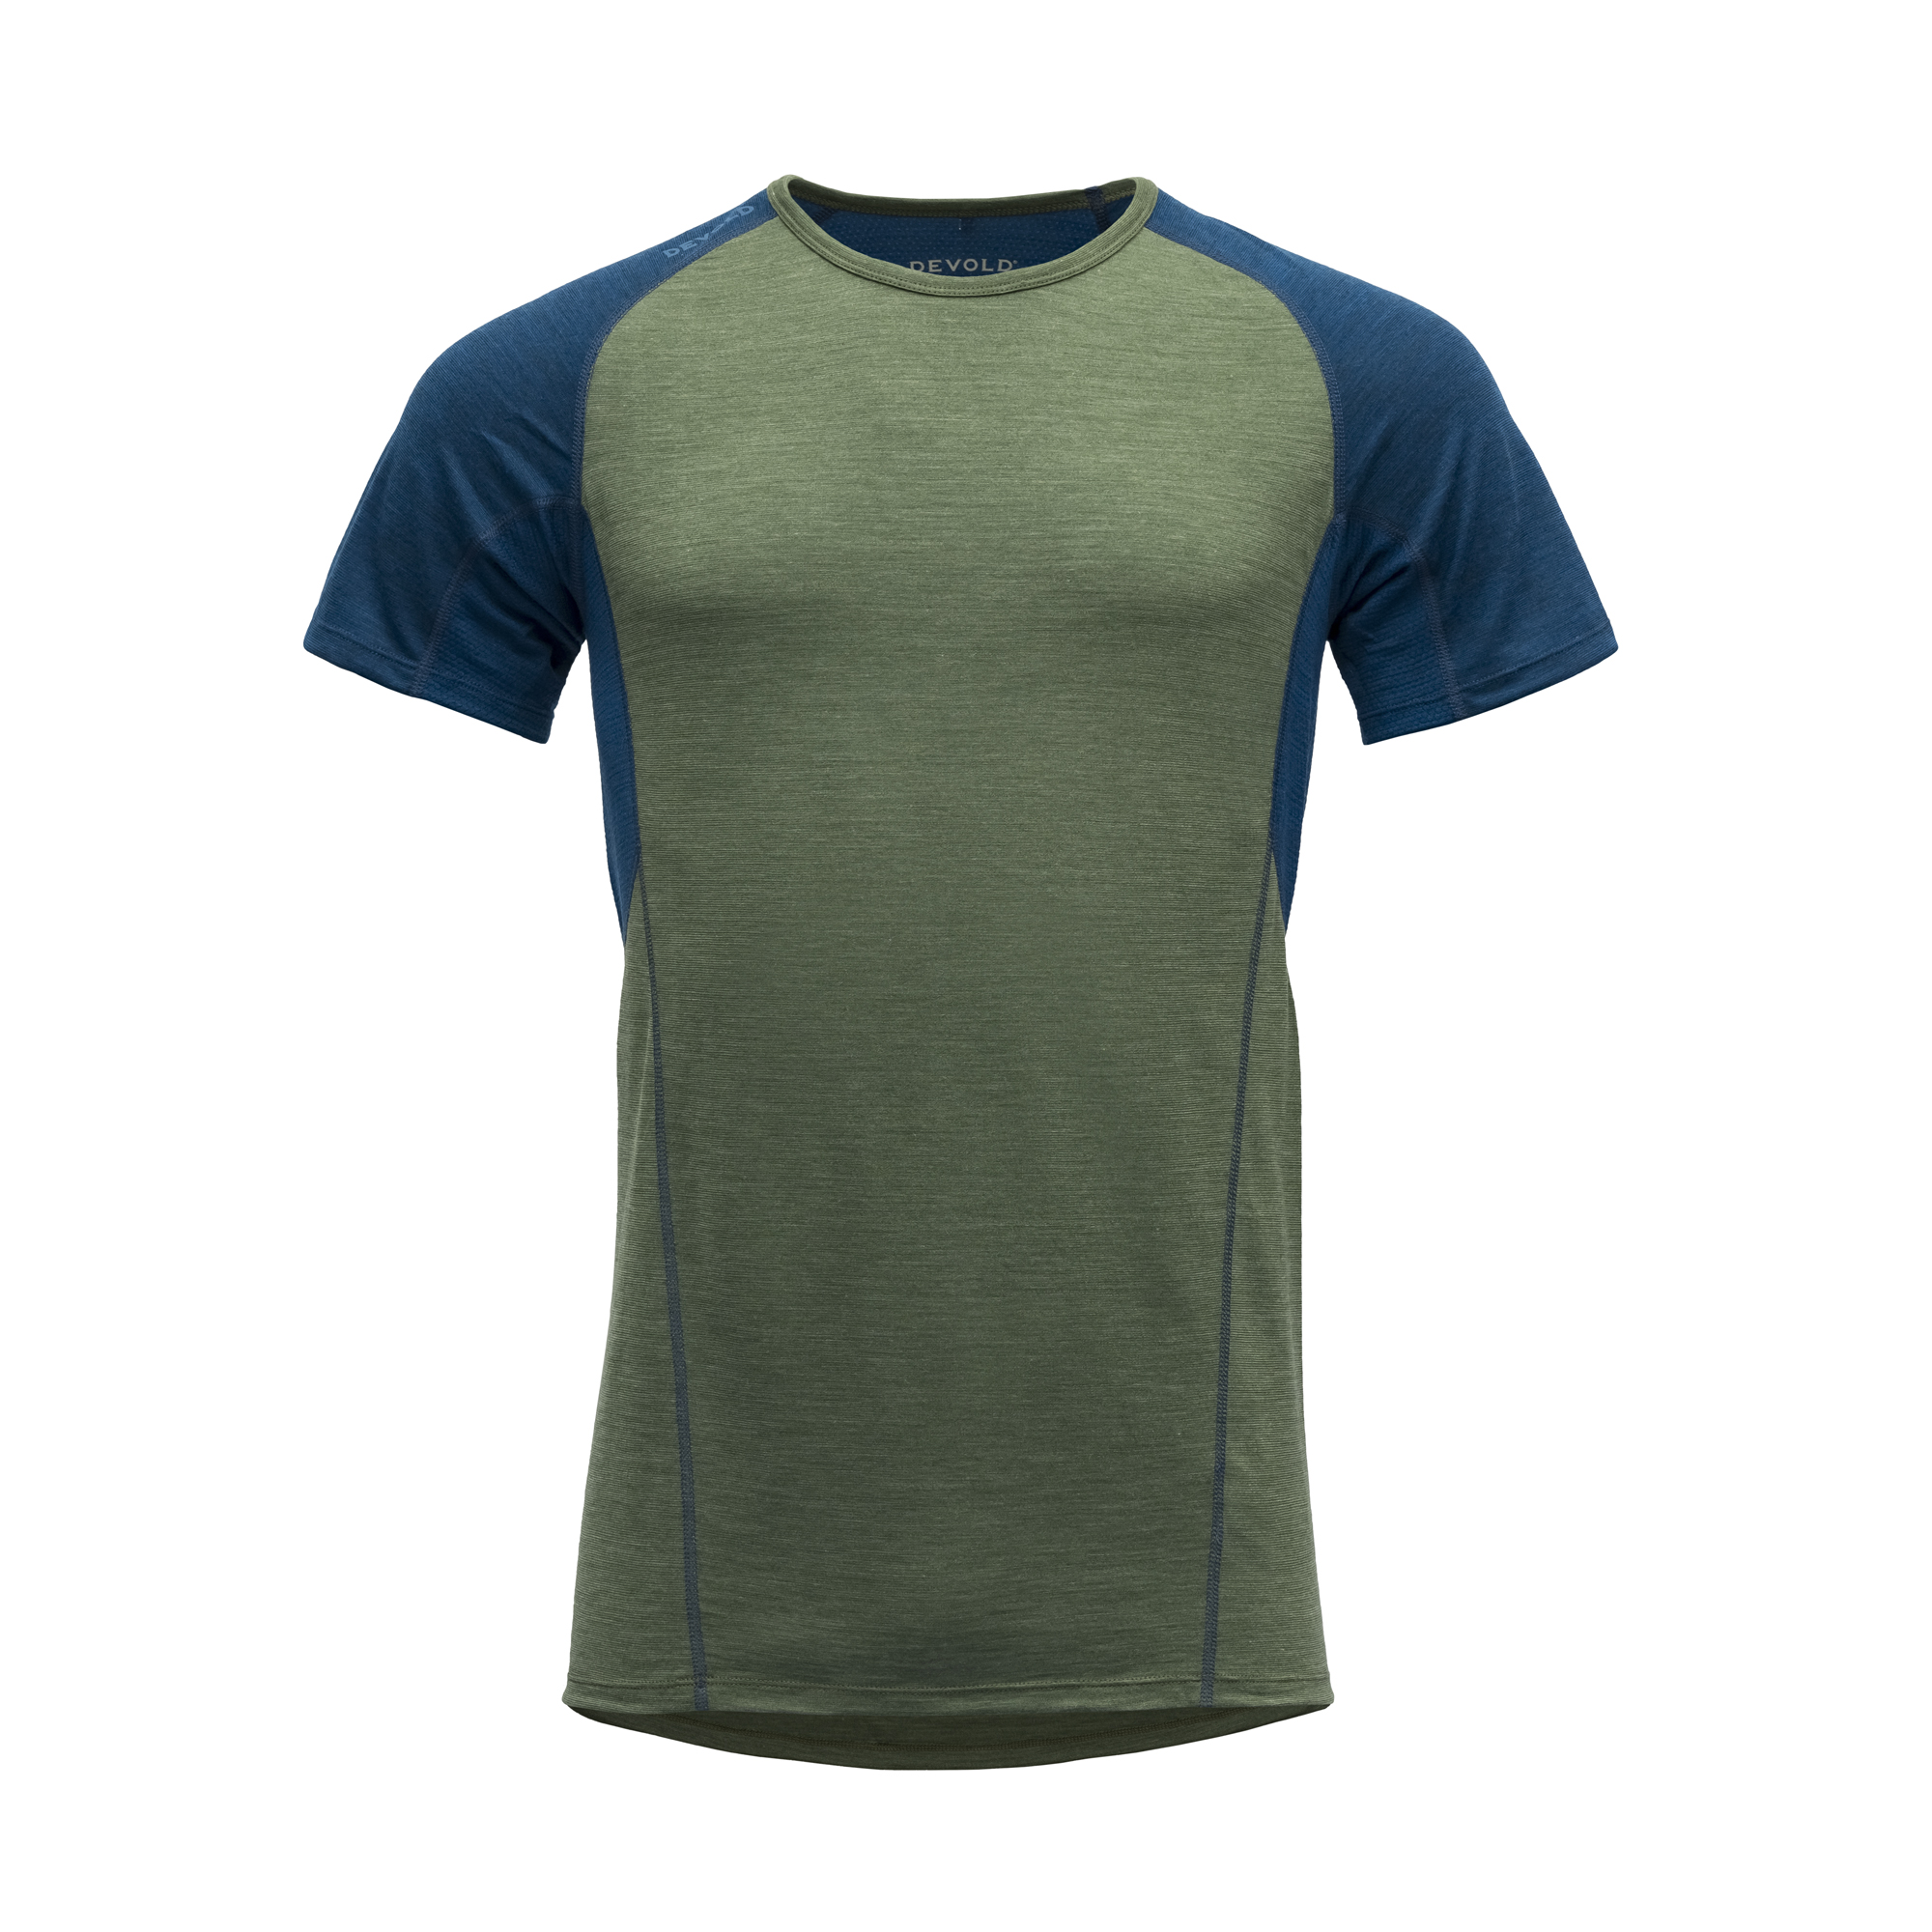 Devold Merino 130 tričko s krátkým rukávem - pánské - zelená/modrá Velikost: XL